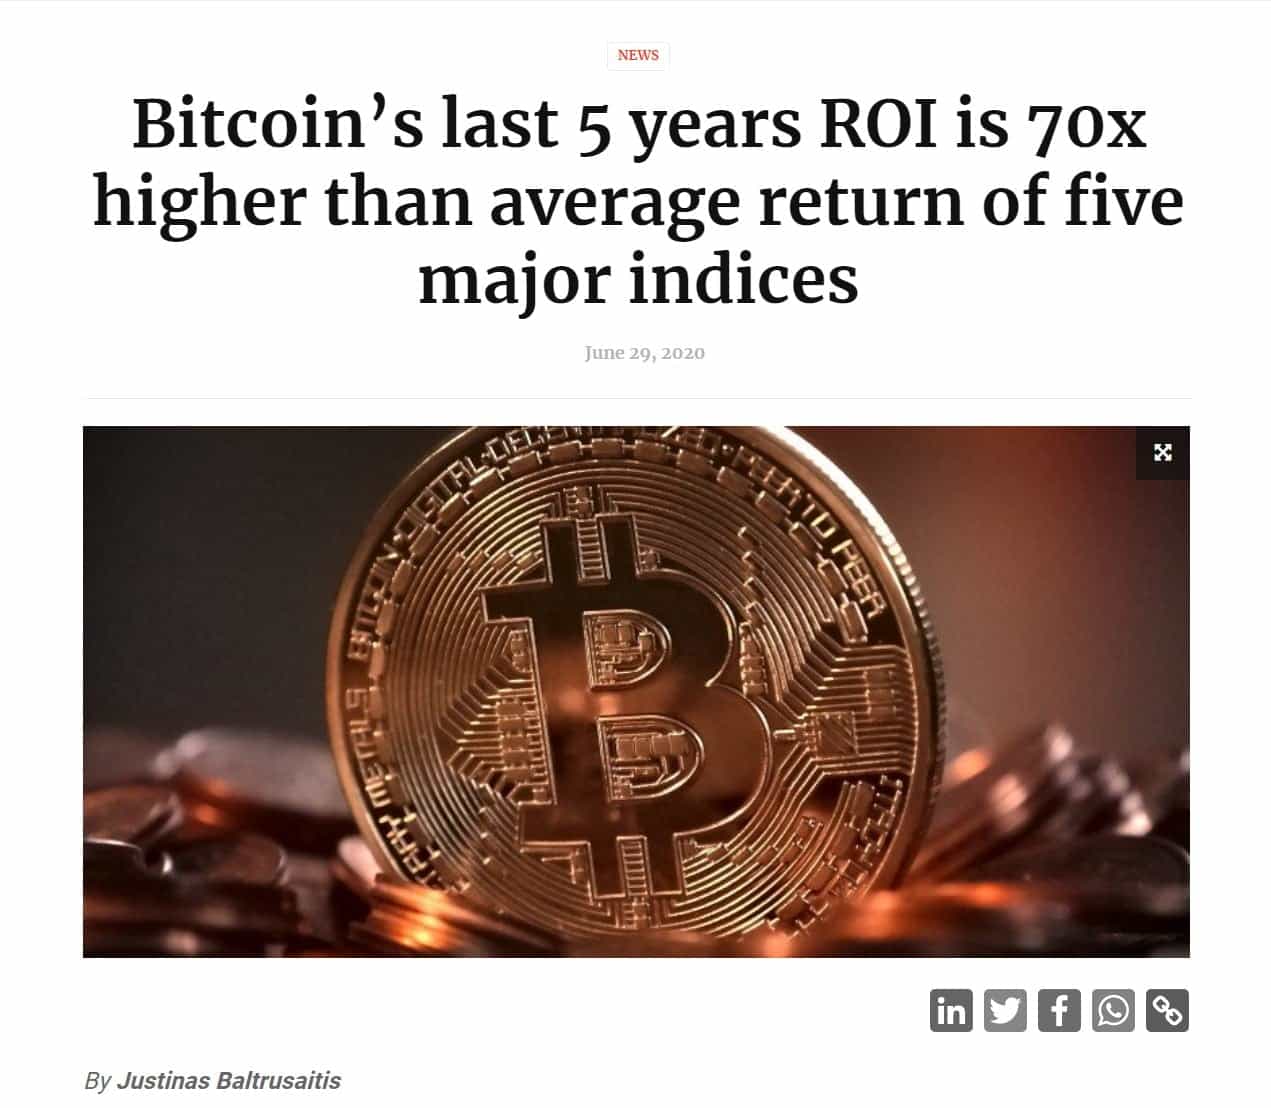 Bitcoin ROI